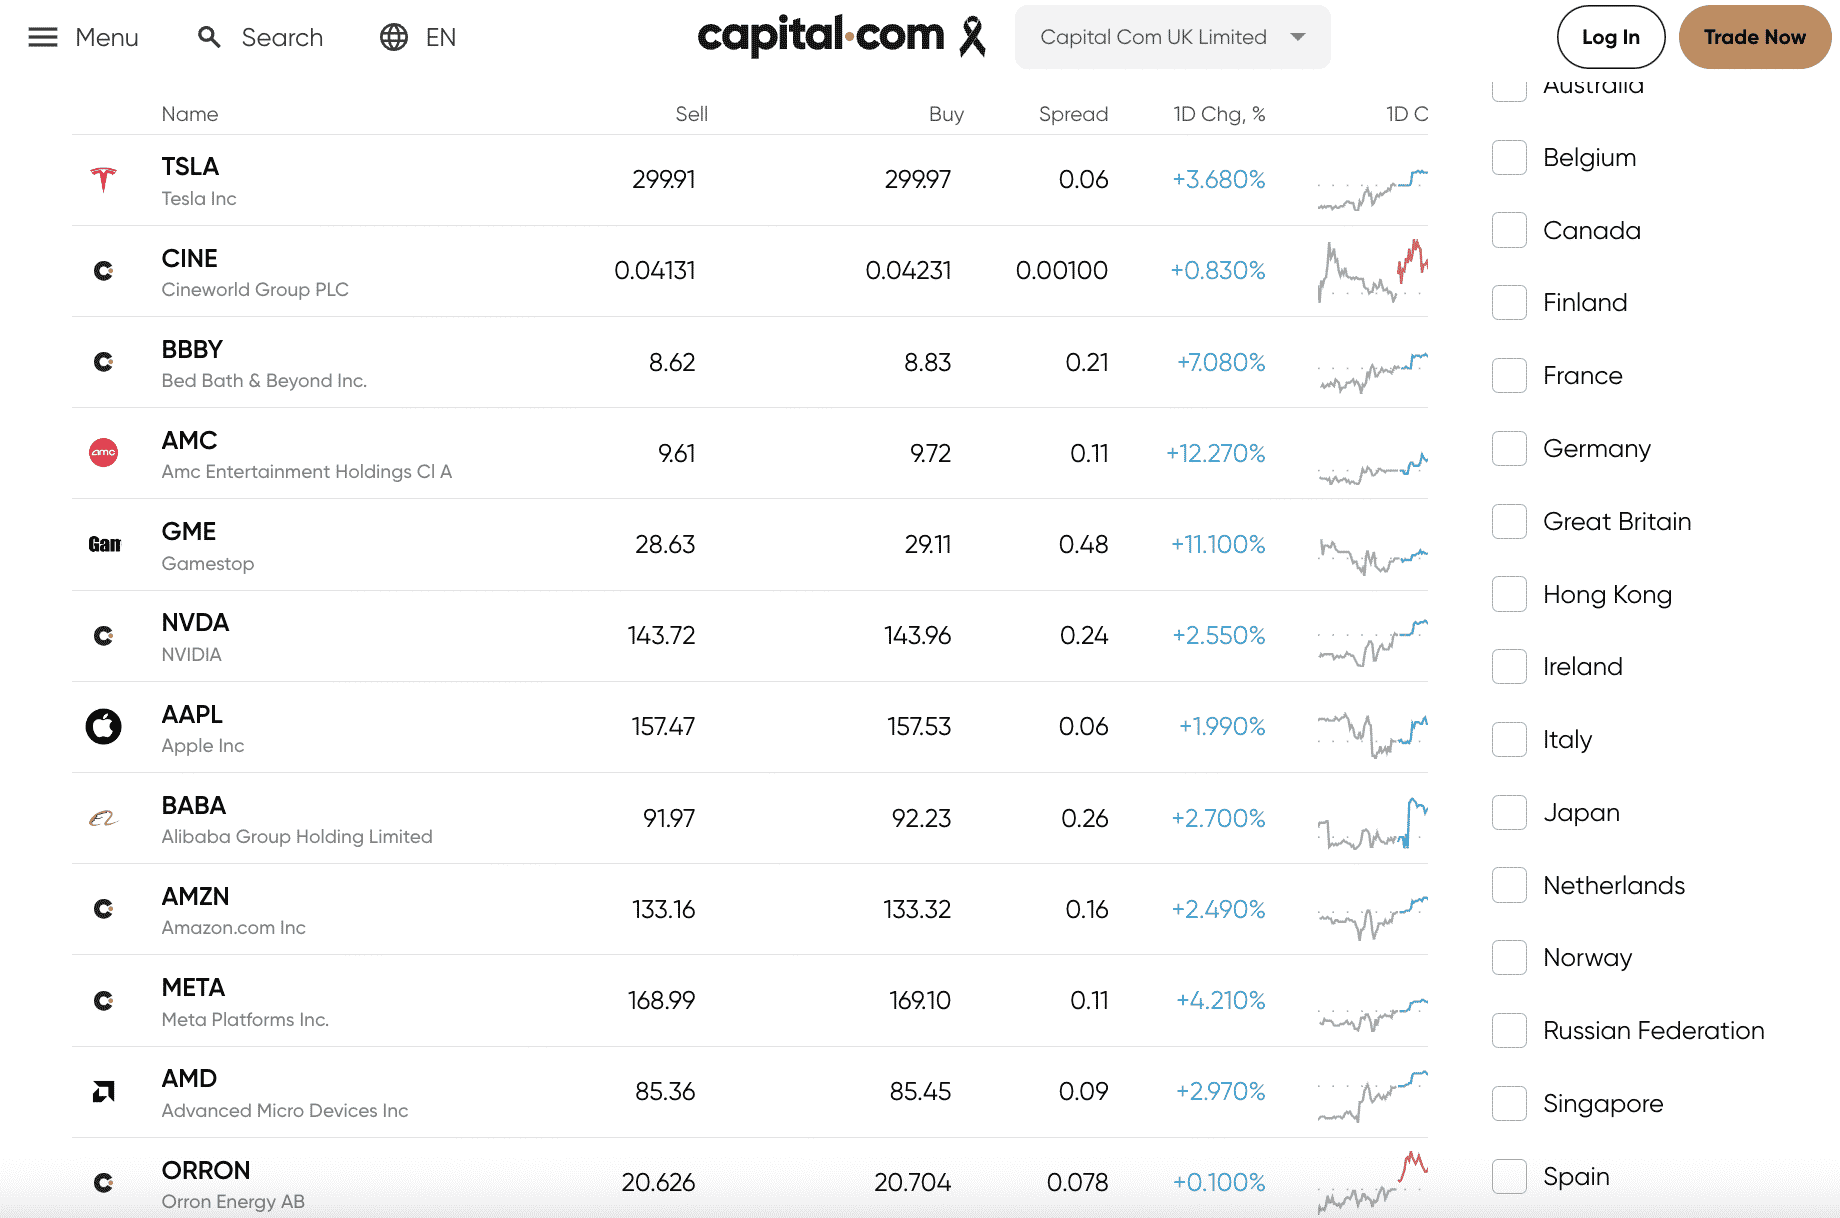 capital.com review 